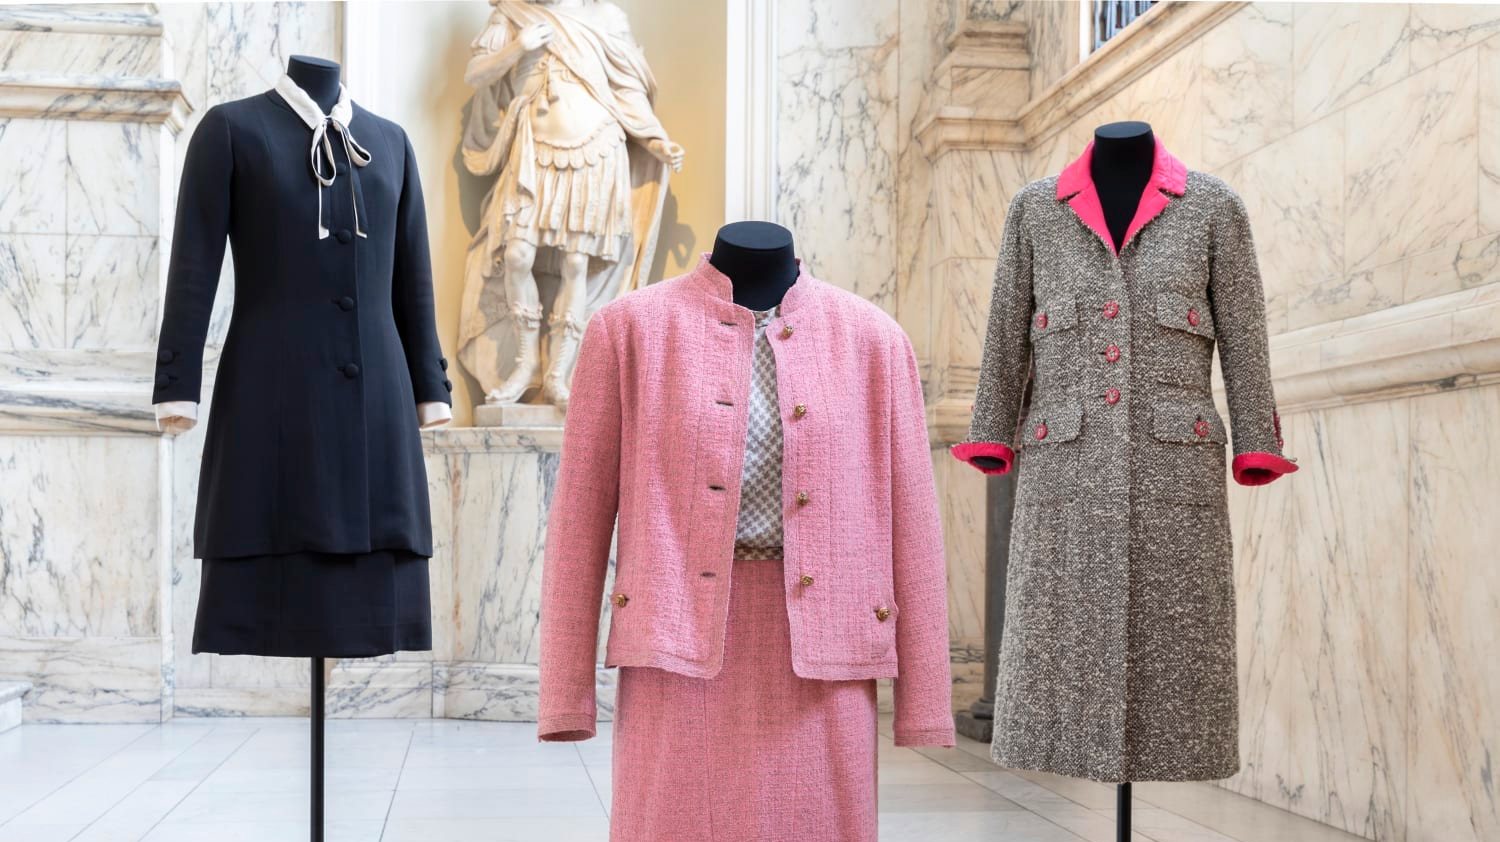 O tailleur em tweed continua a ser a imagem chave do estilo criado por Gabrielle Chanel e não poderia faltar na grande exposição que está a ser preparada. © Copyright Victoria and Albert Museum, London